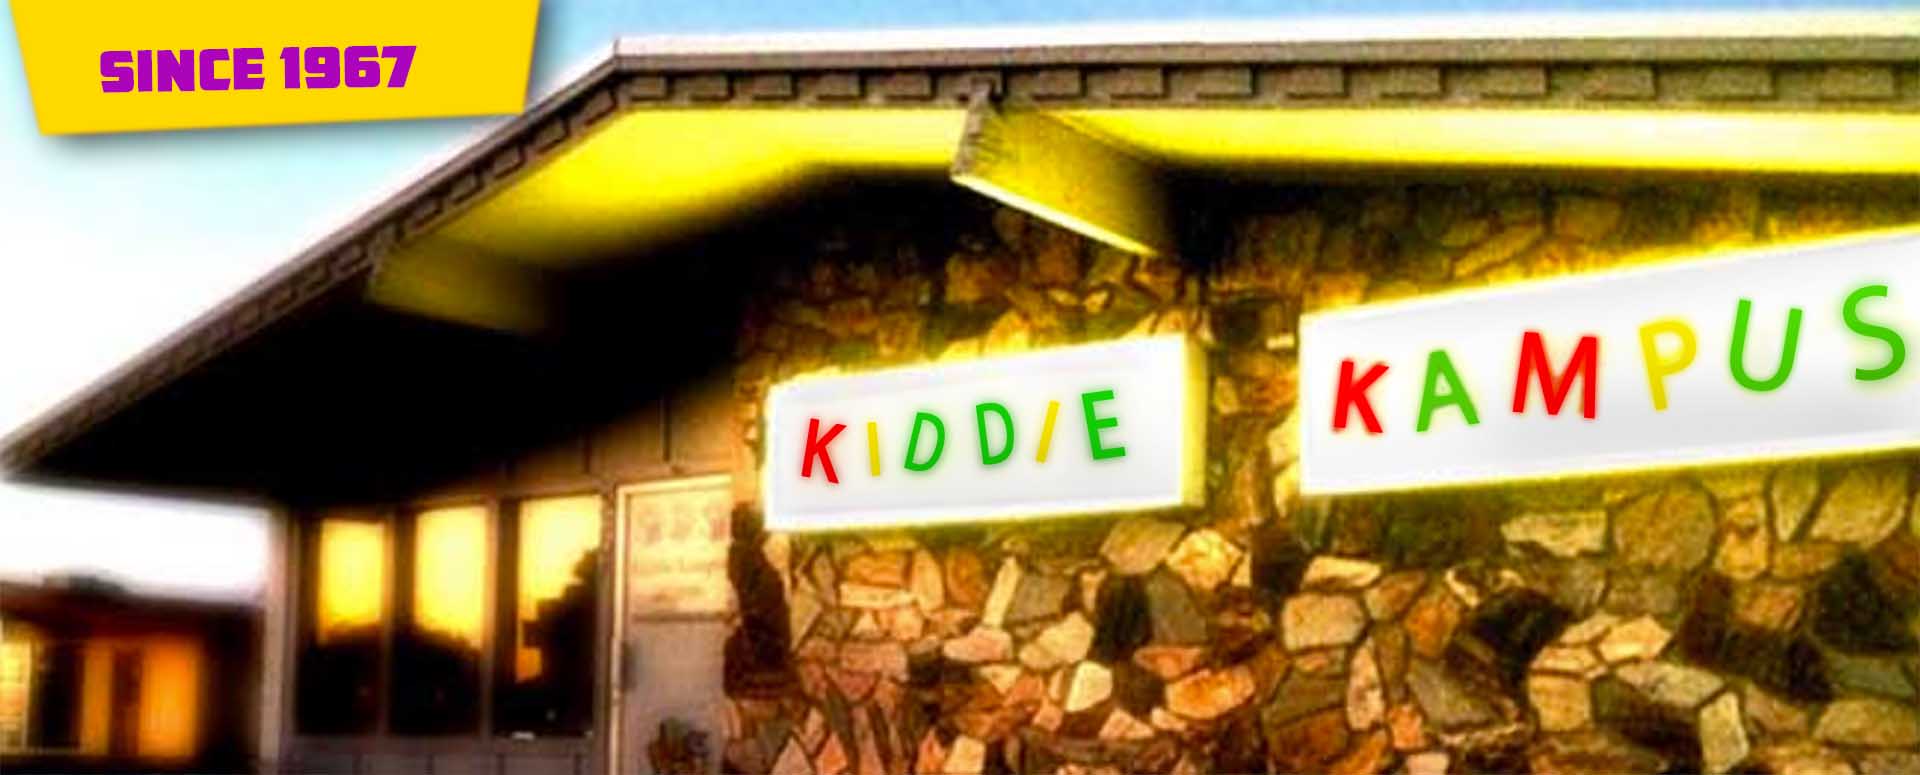 Kiddie Kampus sign